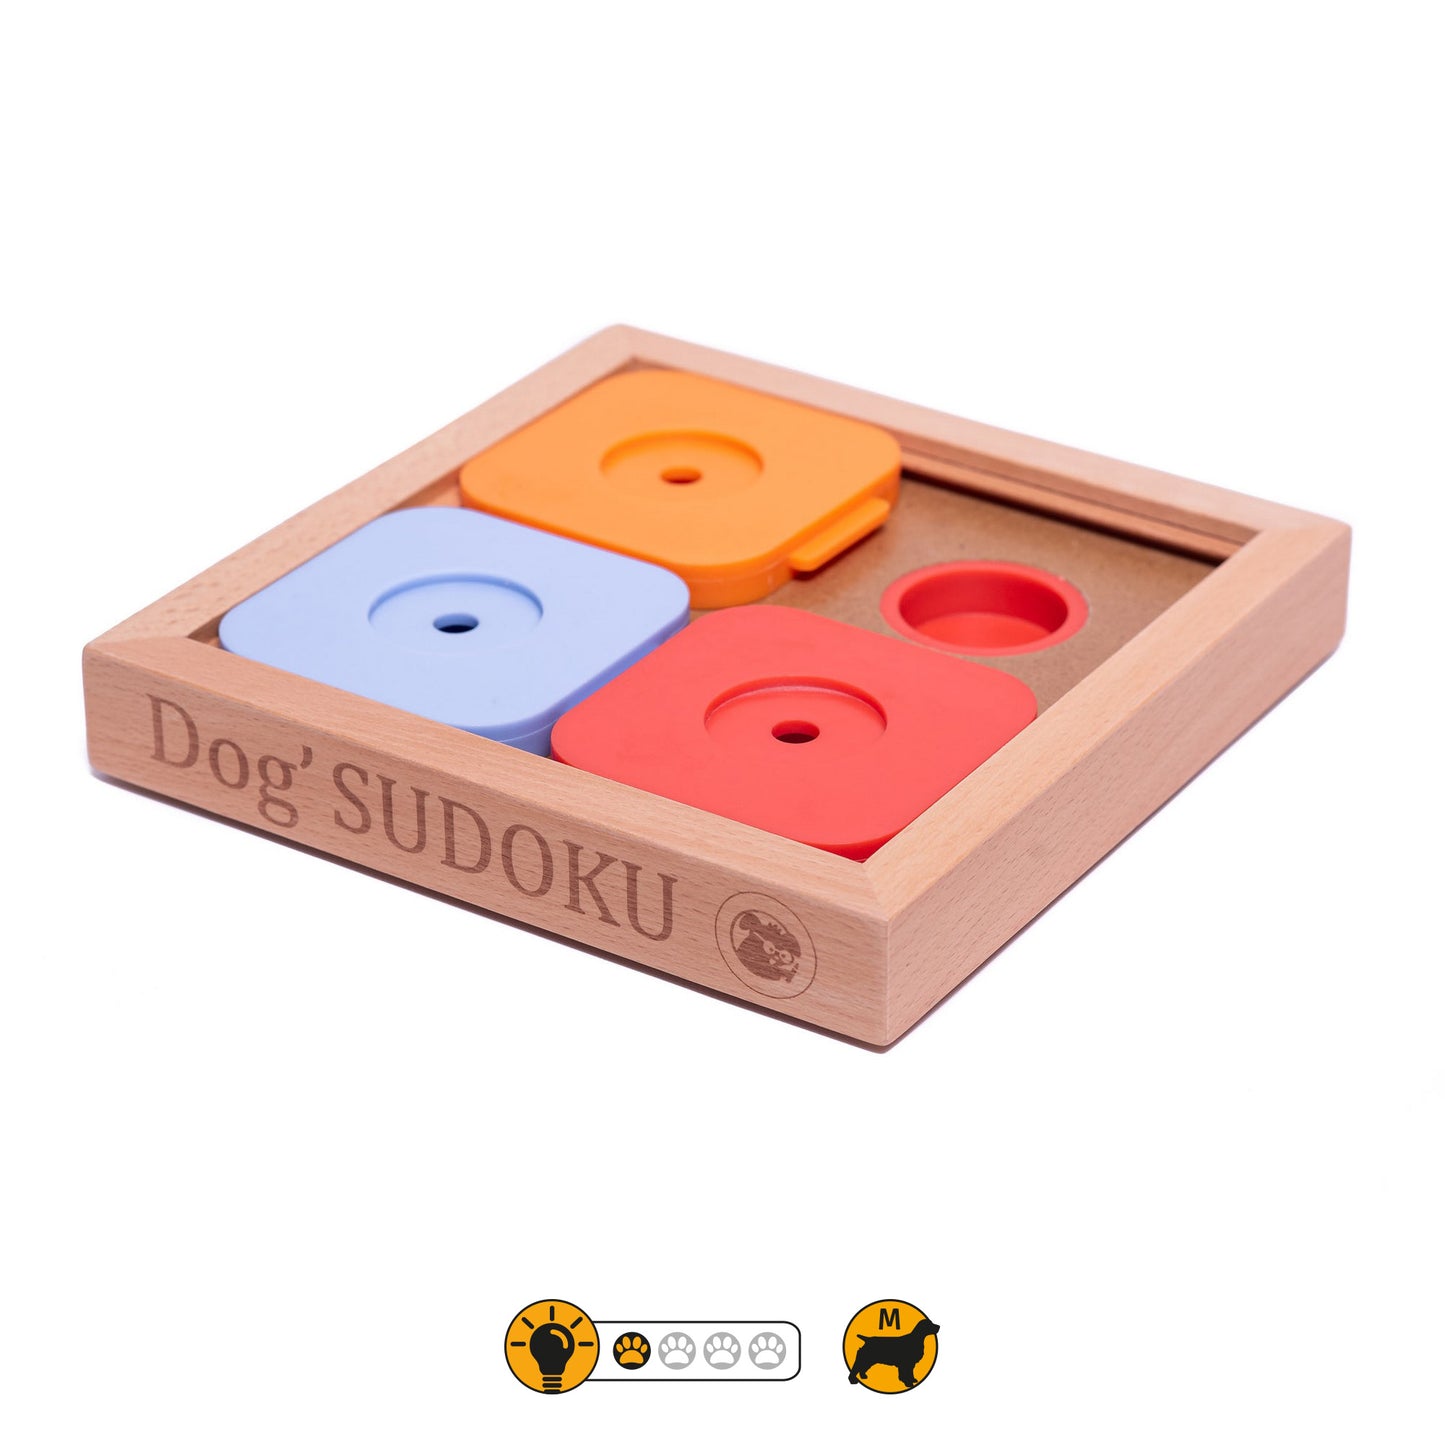 Dog' Sudoku Medium Basic Color